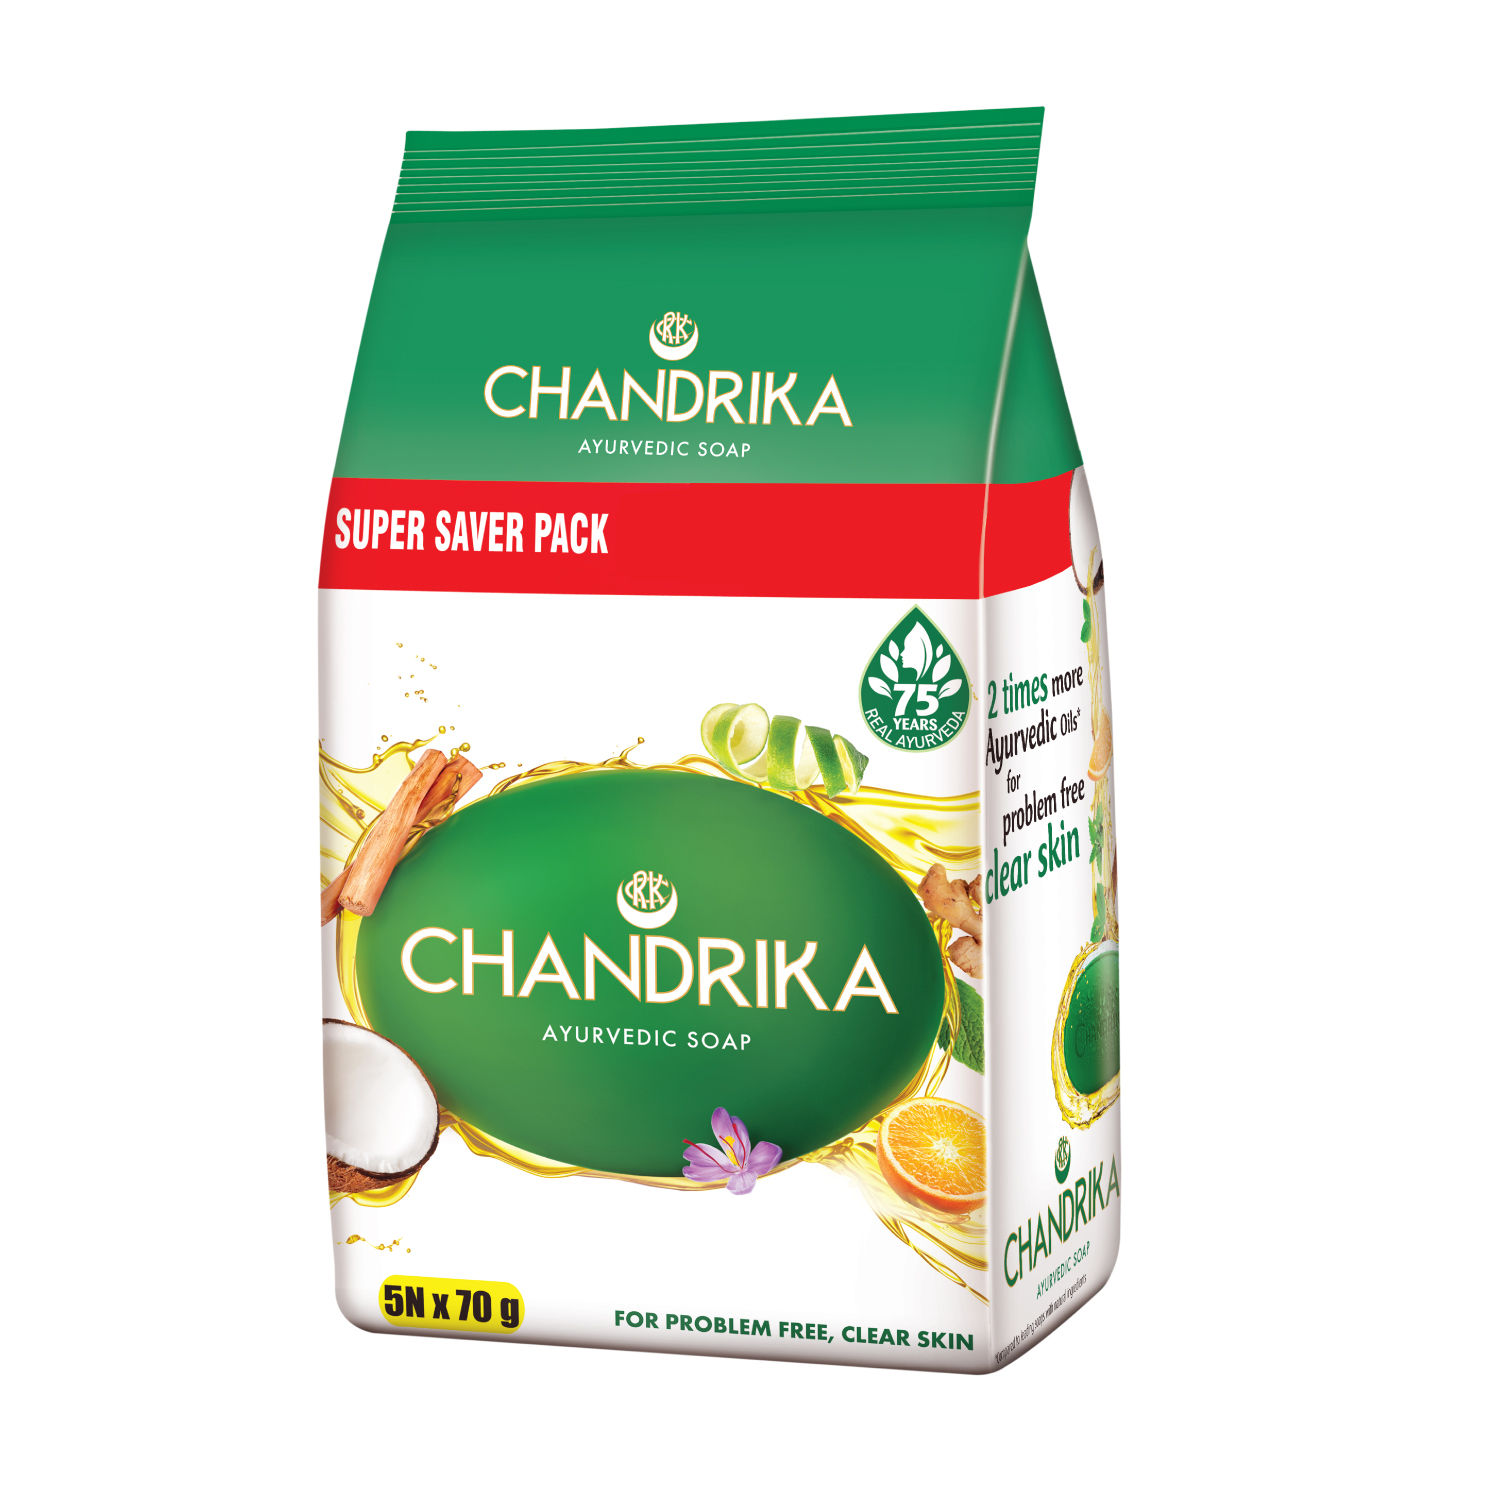 Chandrika Ayurveda Handmade Soap Super Saver Pack